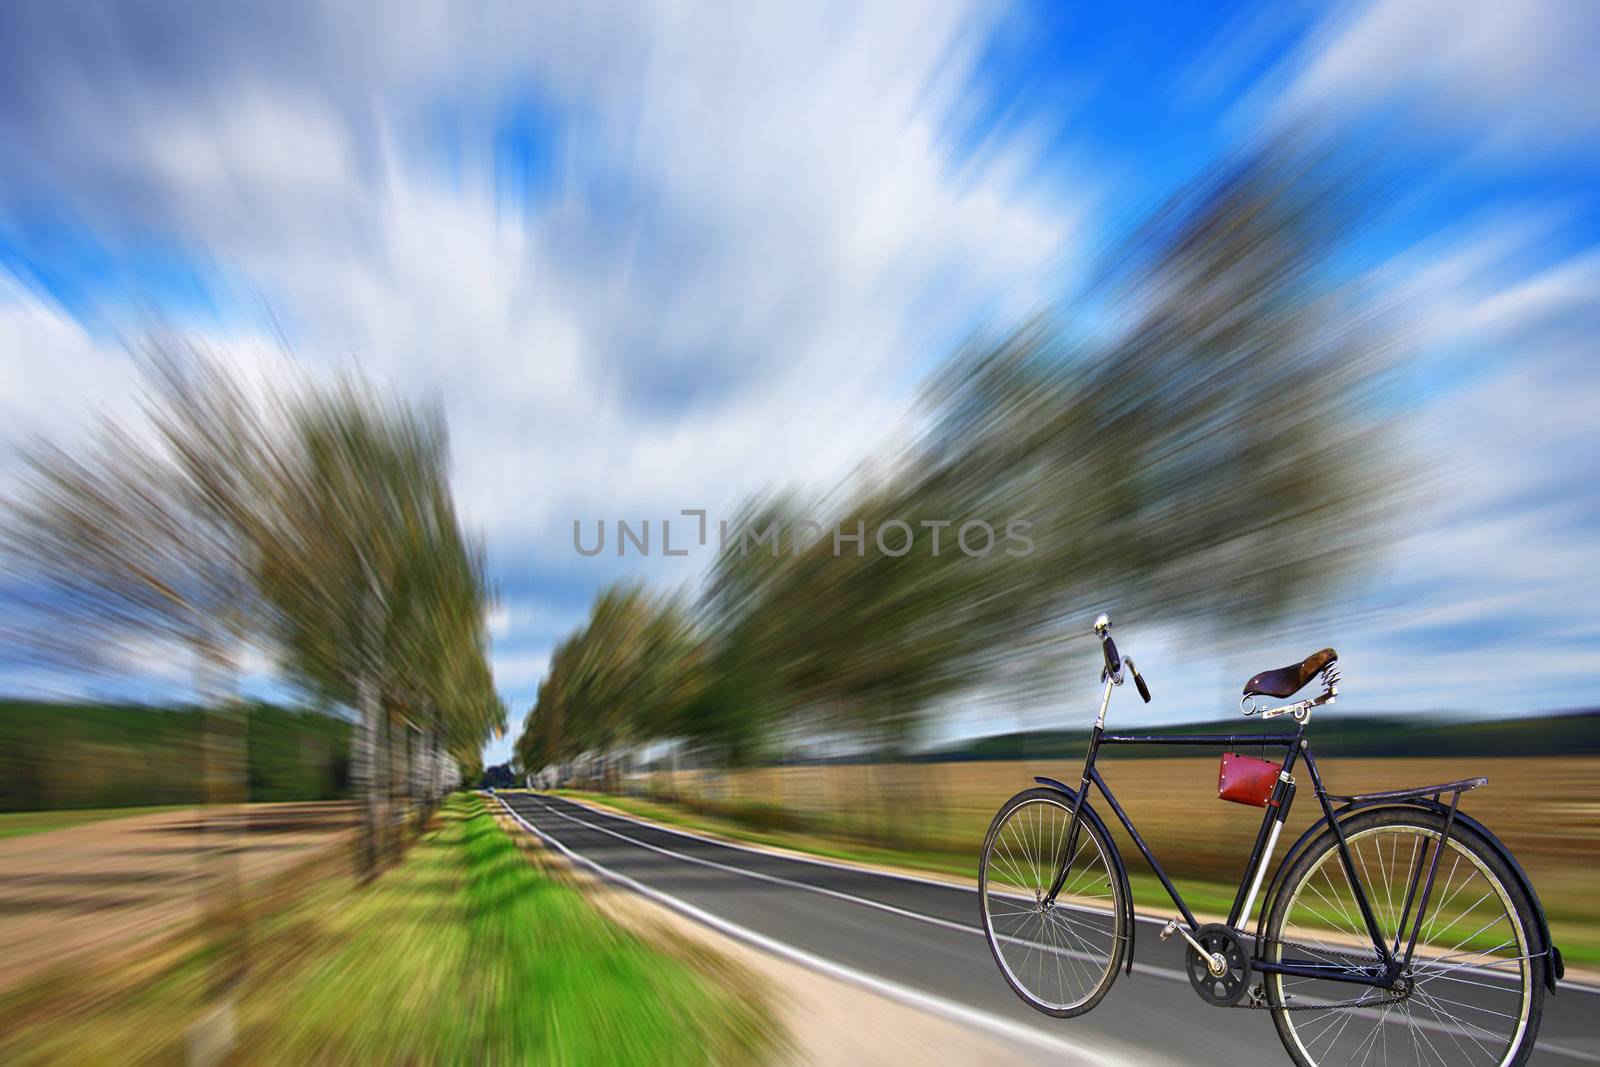 Bicycle on a highway by petrkurgan